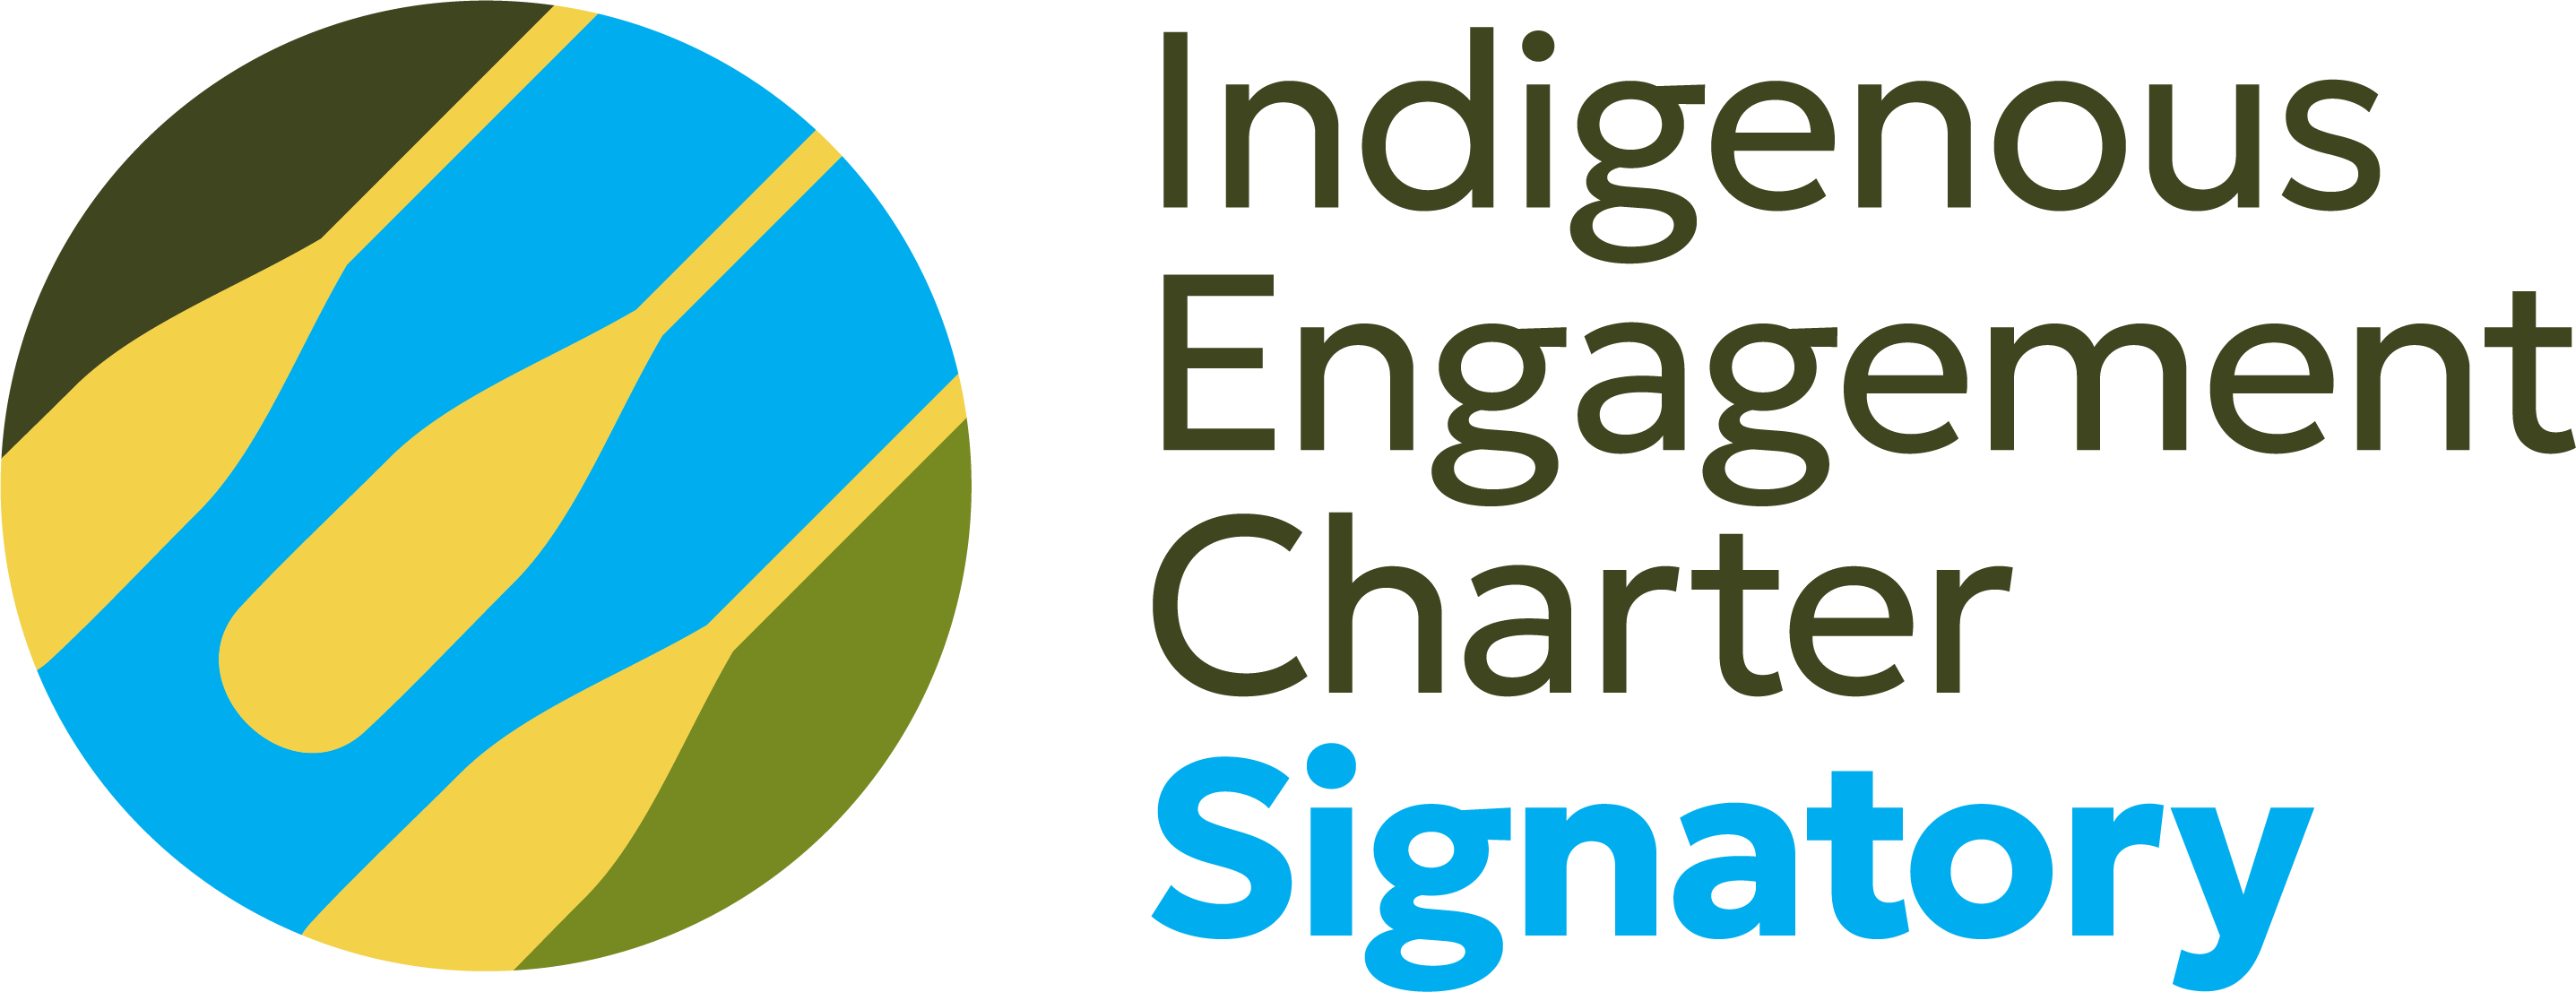 IEC Signatory Logo